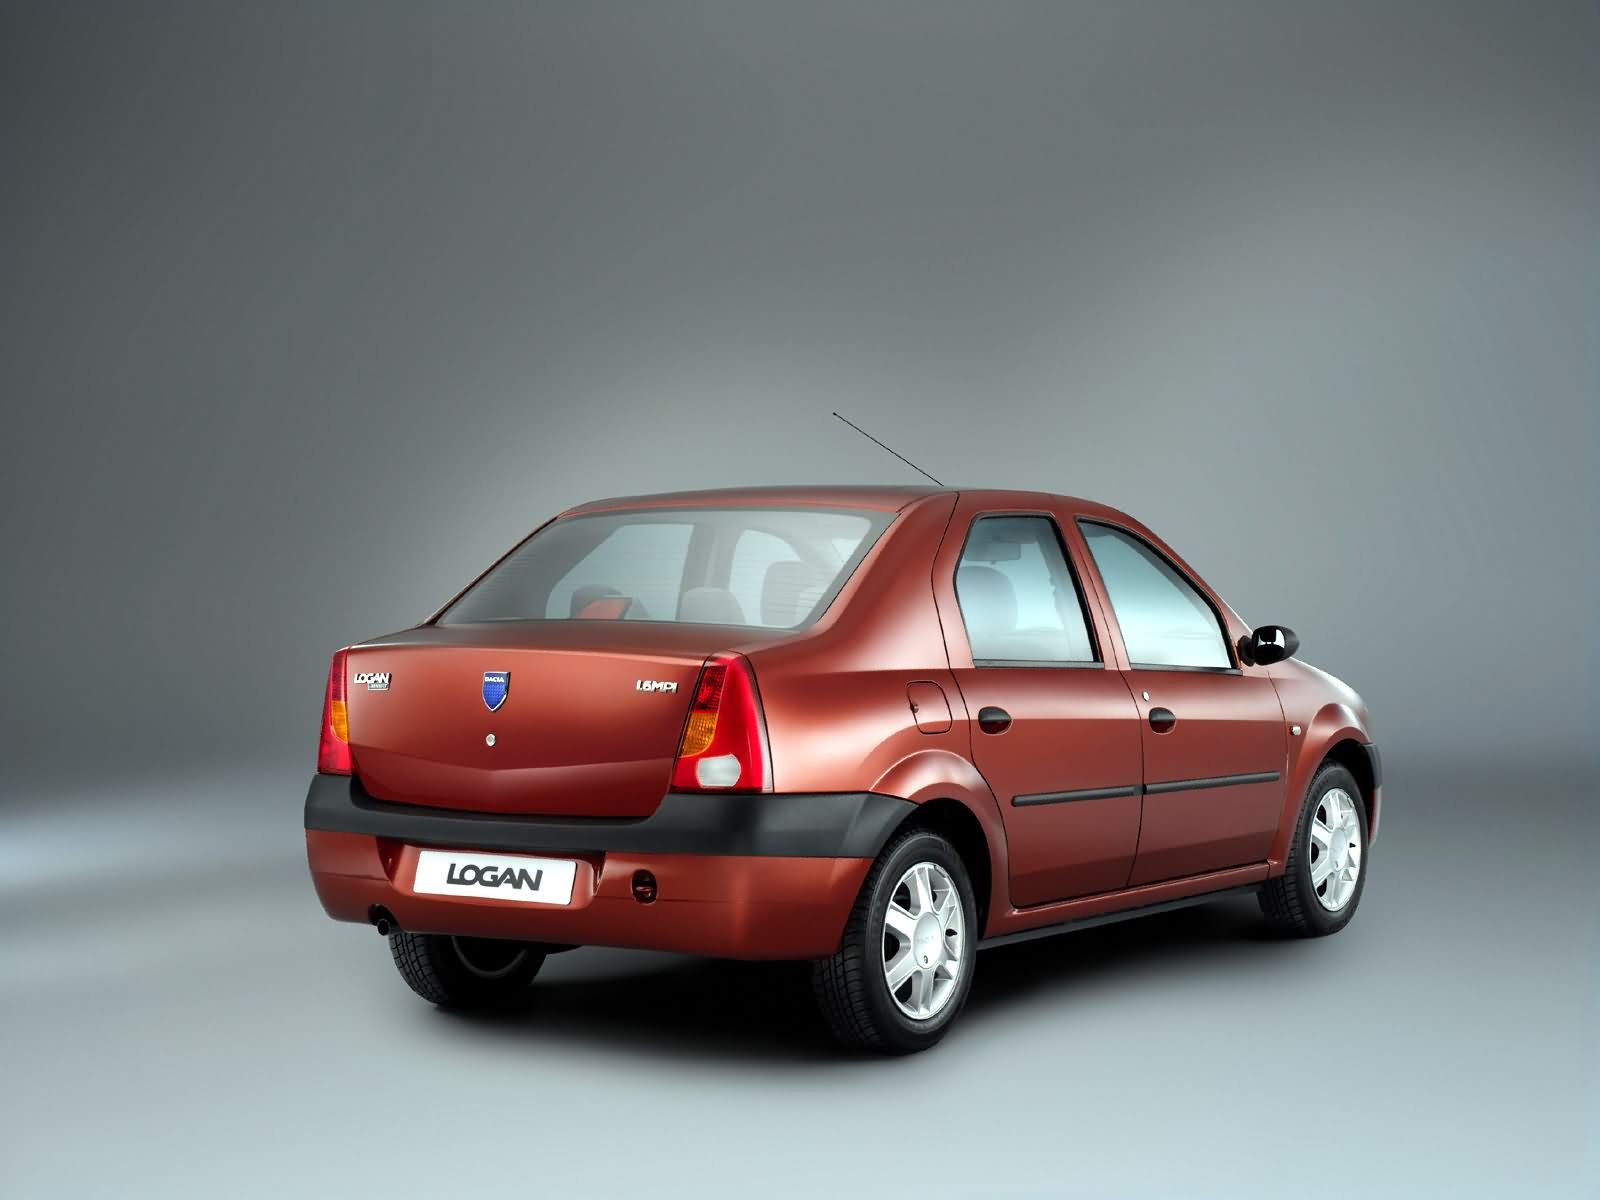 Renault Logan 1.6 MPI